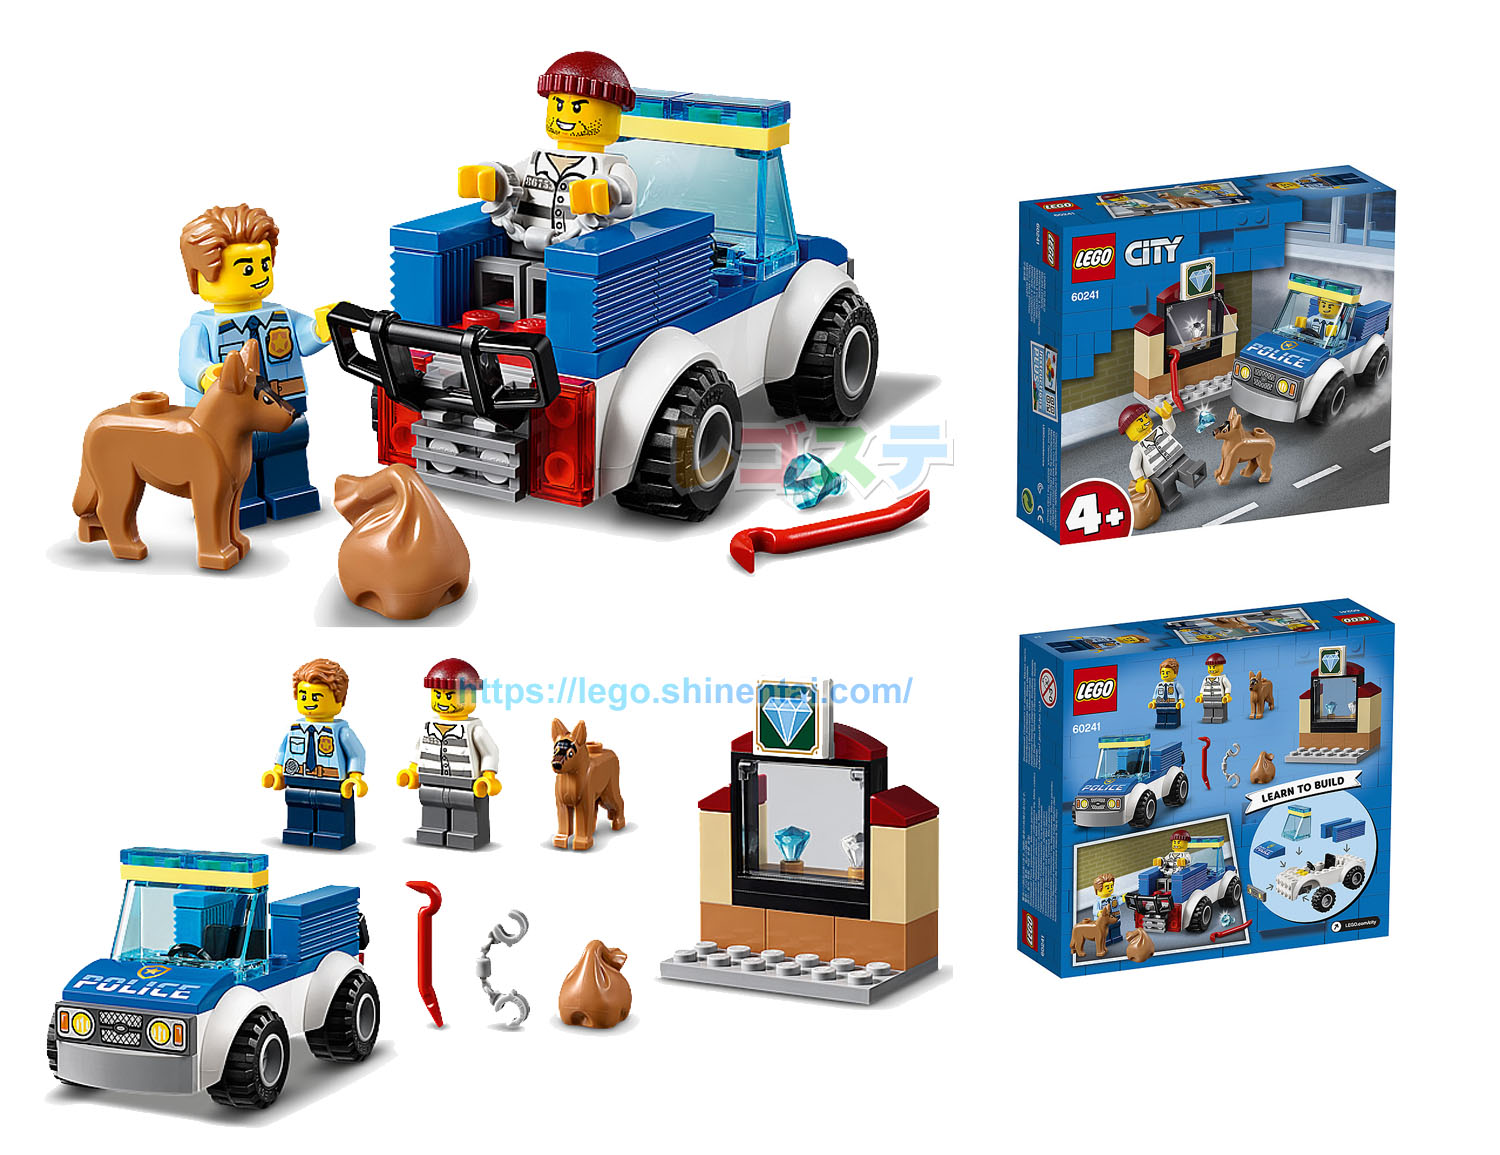 年版legoシティ警察と消防新製品公式画像公開 19 12 26発売 みんな大好き定番シリーズ スタッズ レゴの楽しさを伝えるwebメディア